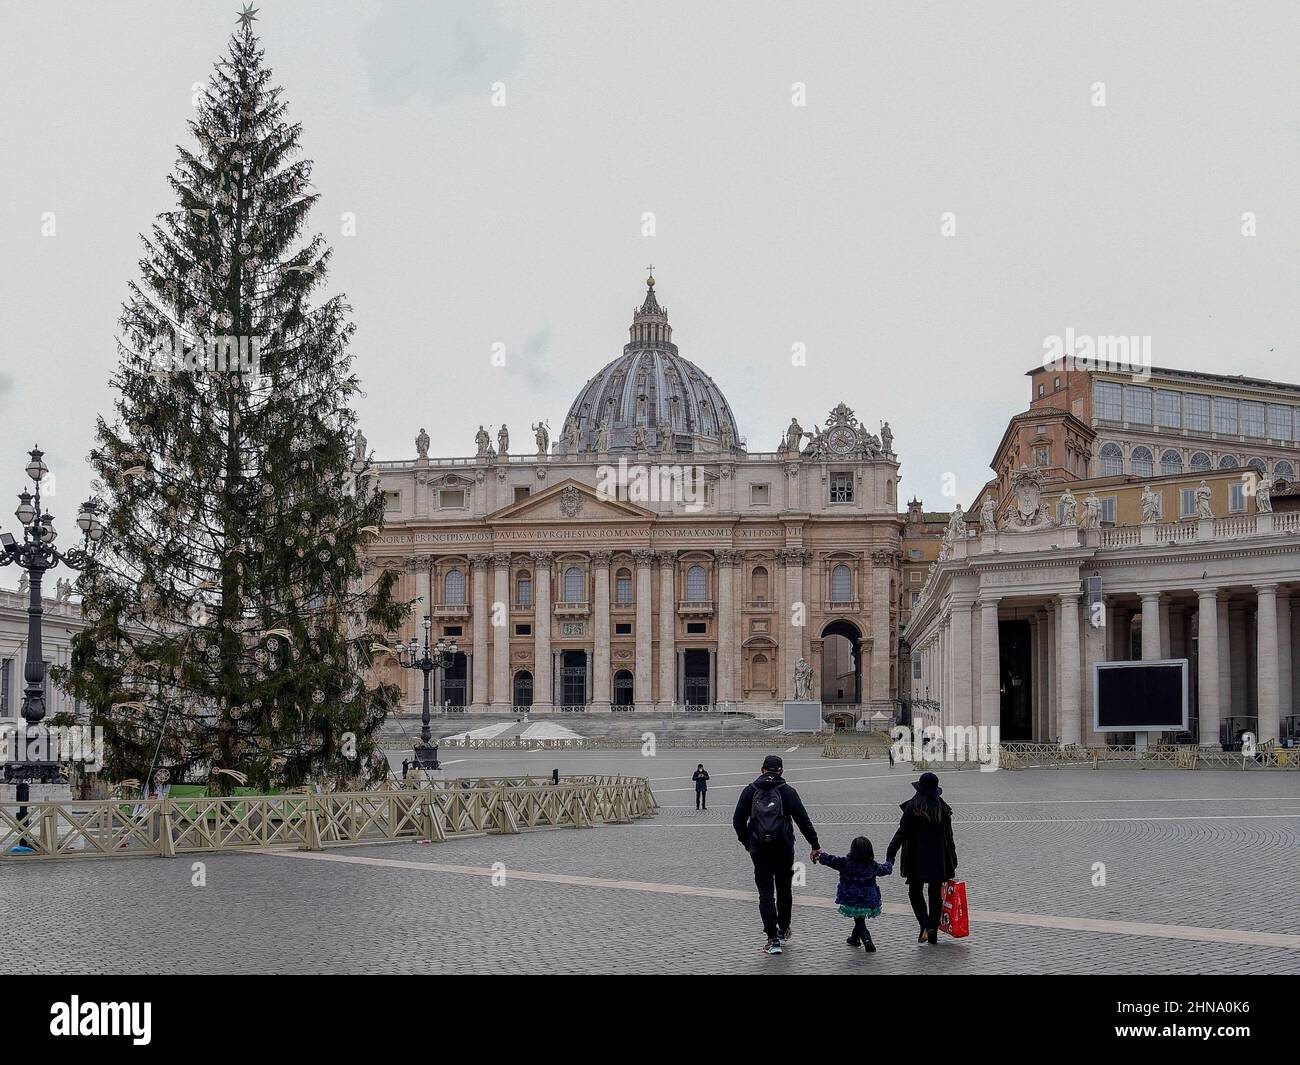 Italie, Rome, 25th décembre 2020. Les gens marchent sur une place Saint-Pierre vide inhabituelle pendant les restrictions de verrouillage pour le Covid-19 le jour de Noël. Banque D'Images